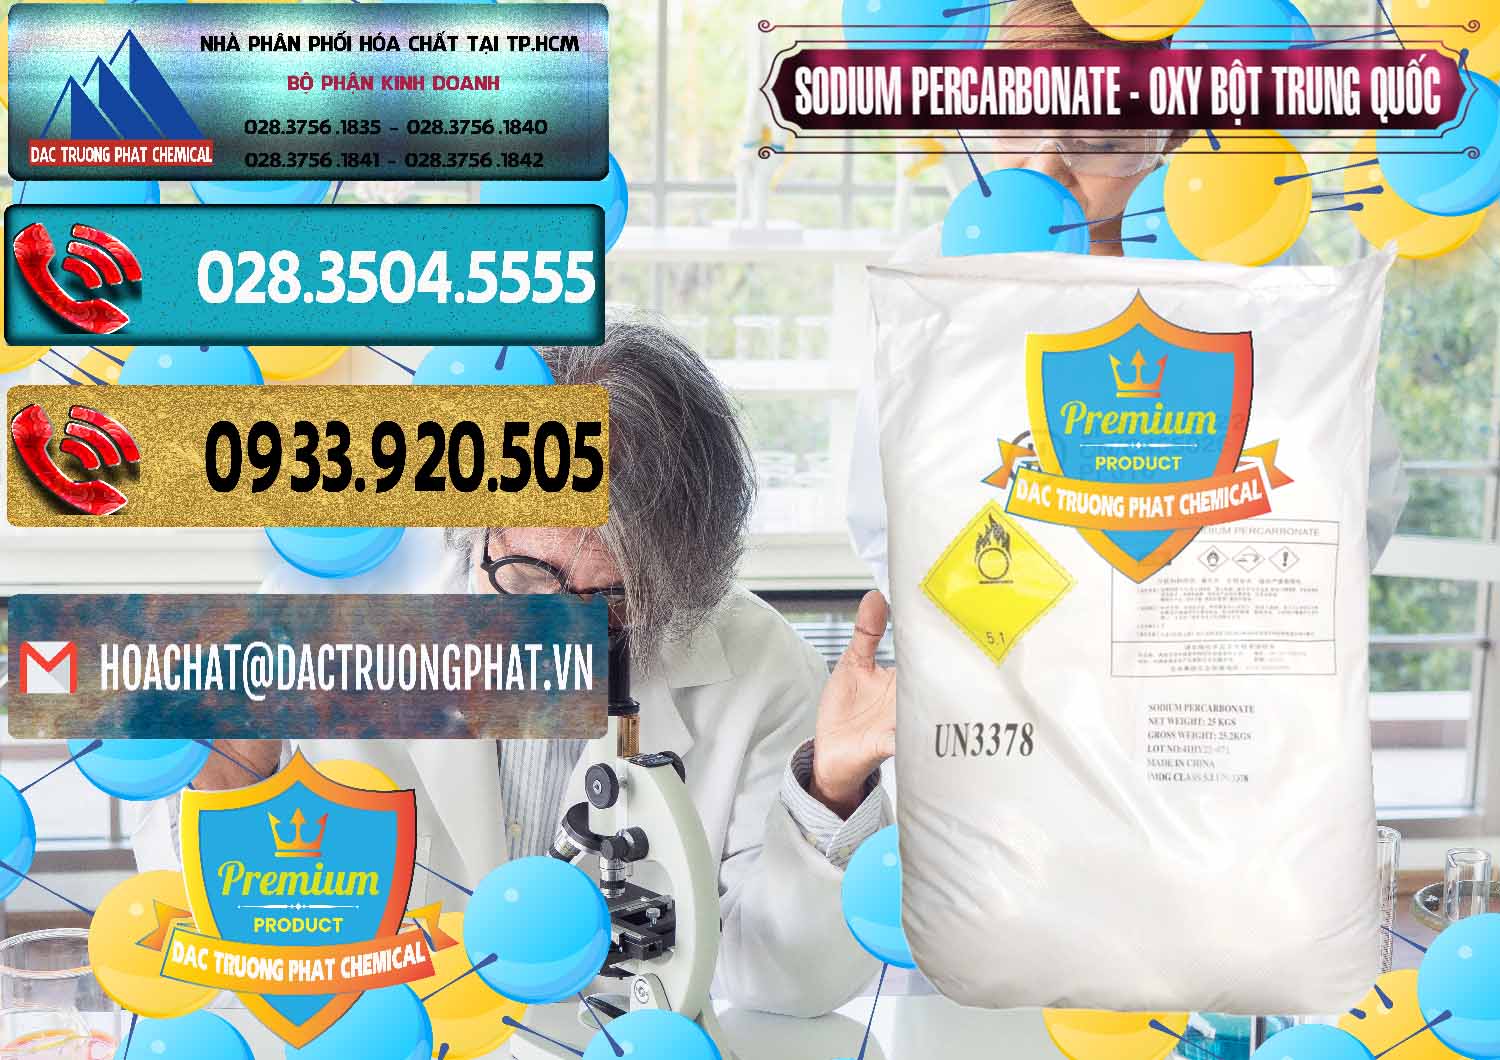 Chuyên cung cấp & bán Sodium Percarbonate Dạng Bột Trung Quốc China - 0390 - Cty chuyên cung cấp và nhập khẩu hóa chất tại TP.HCM - hoachatdetnhuom.com